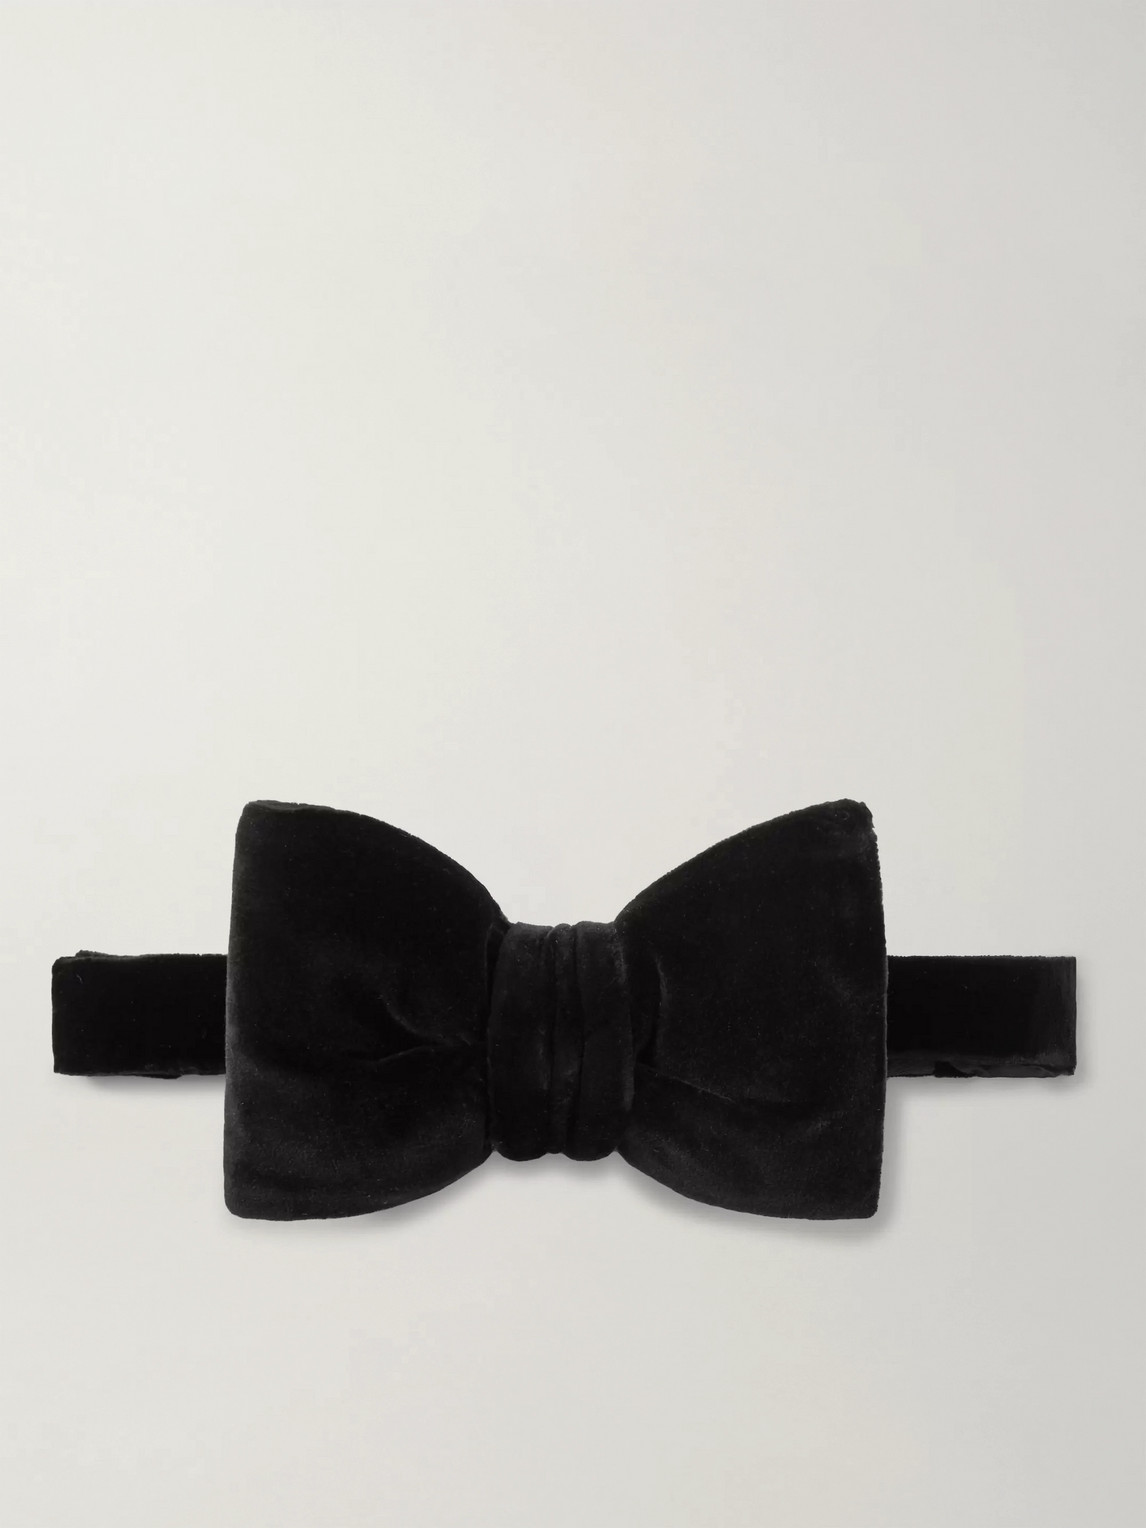 Tom Ford Pre-tied Cotton-velvet Bow Tie In Black